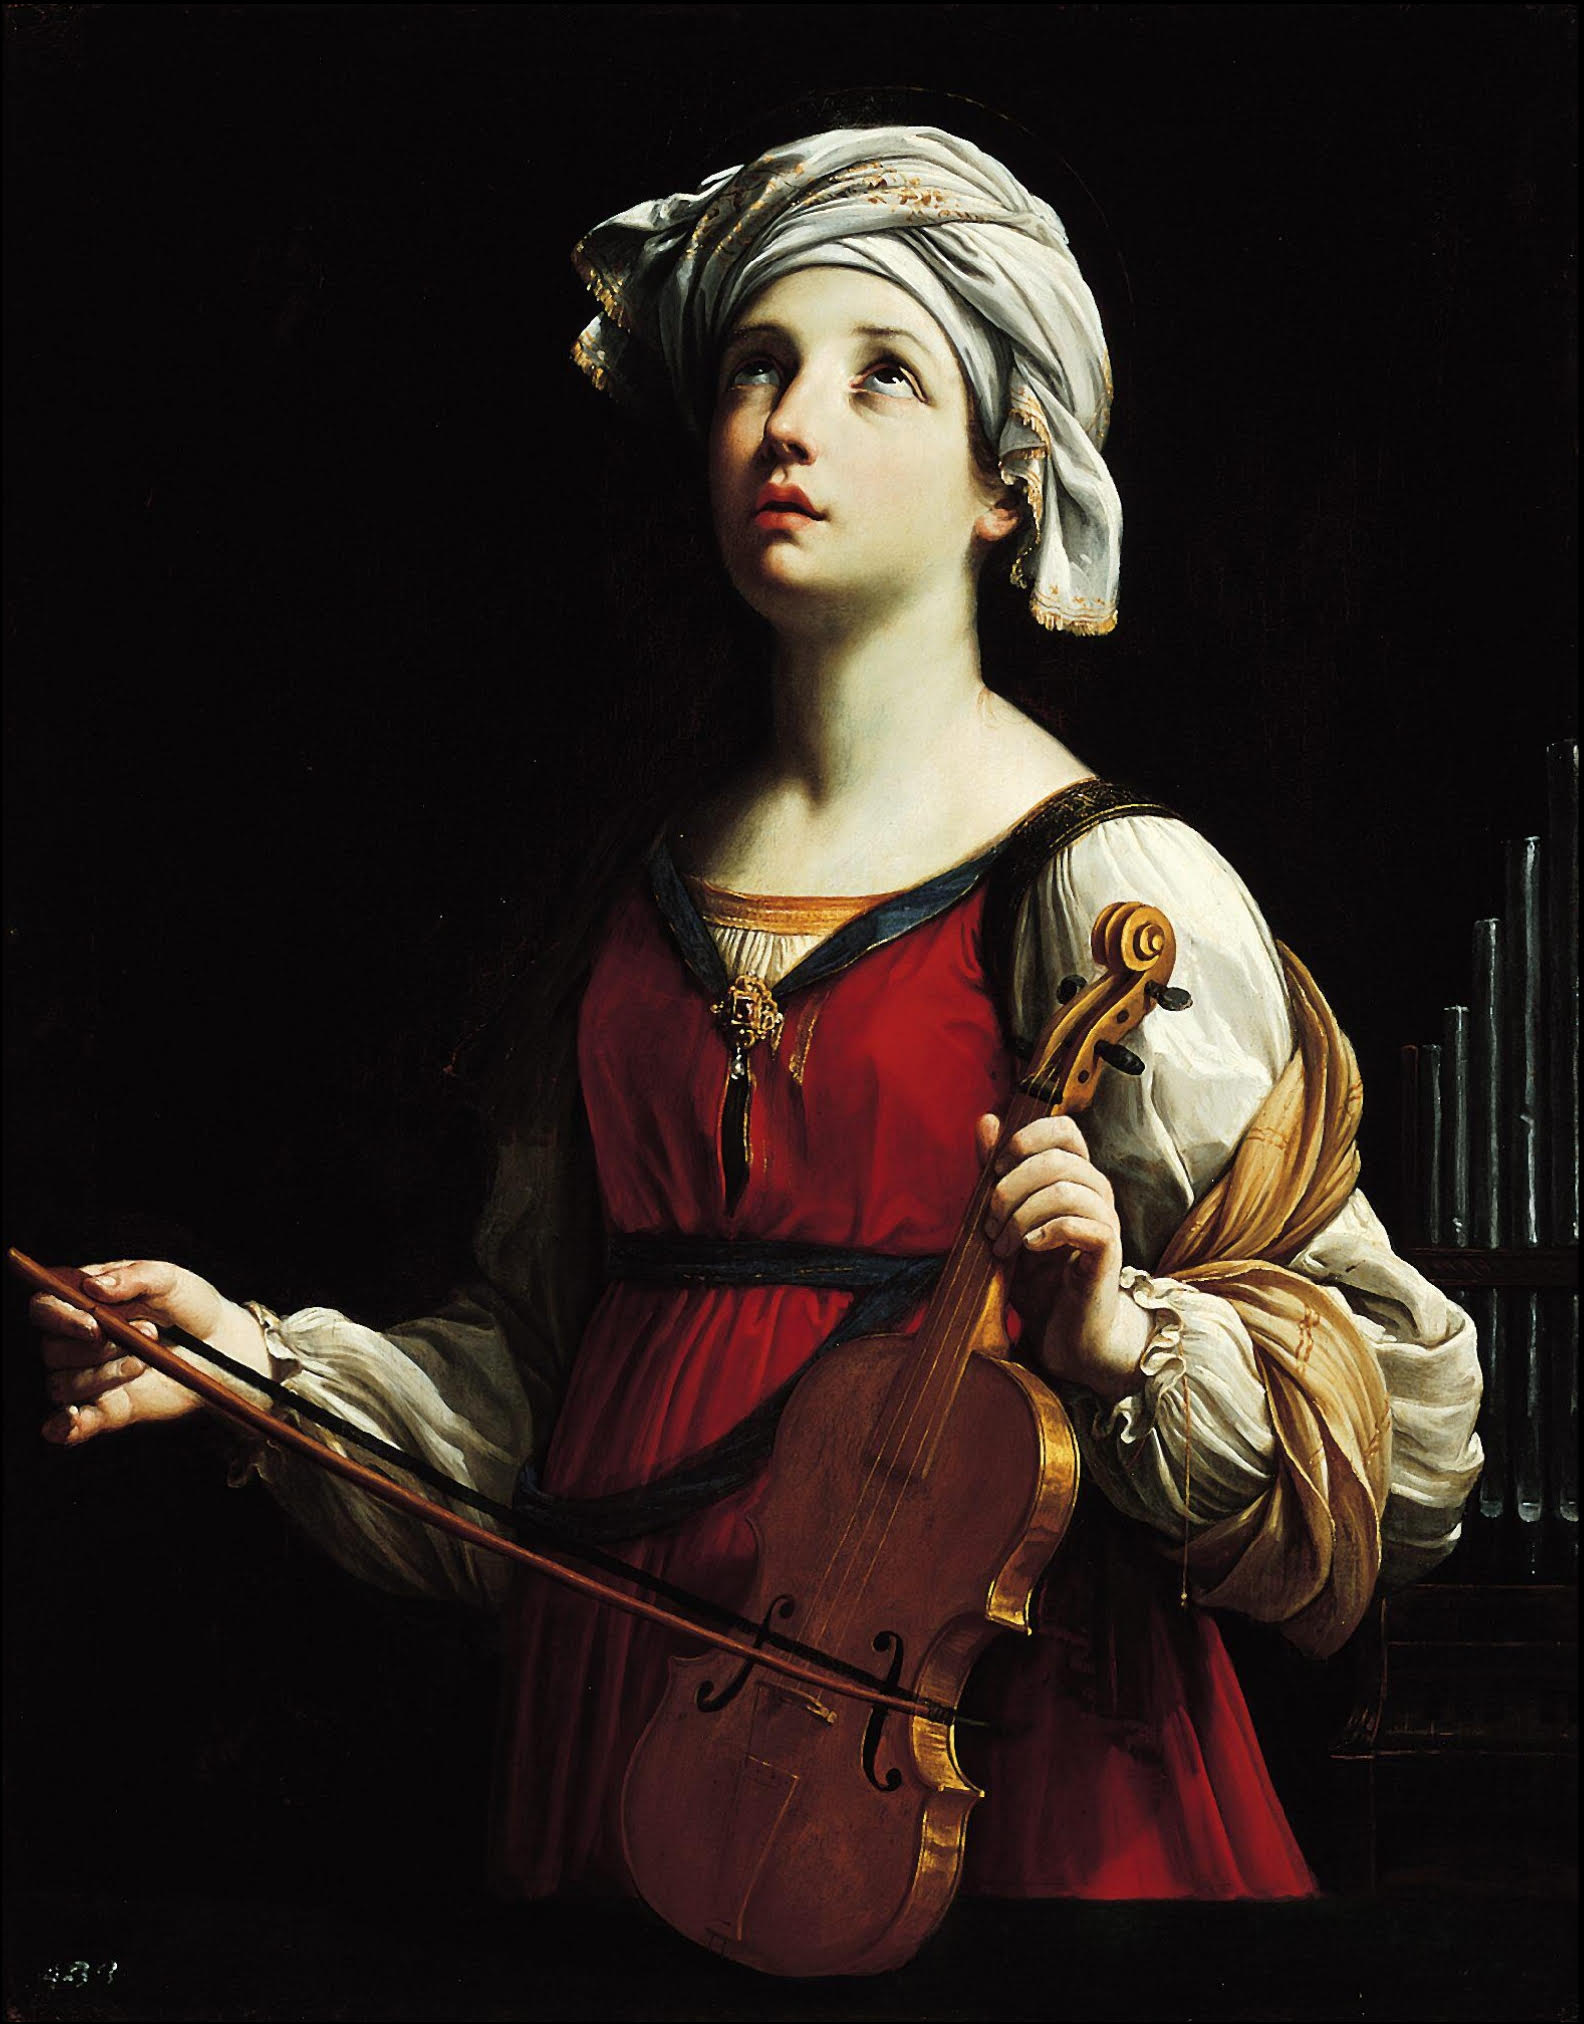 Sf. Cecilia by Guido Reni - 1606 - 95.9 x 74.9 cm 